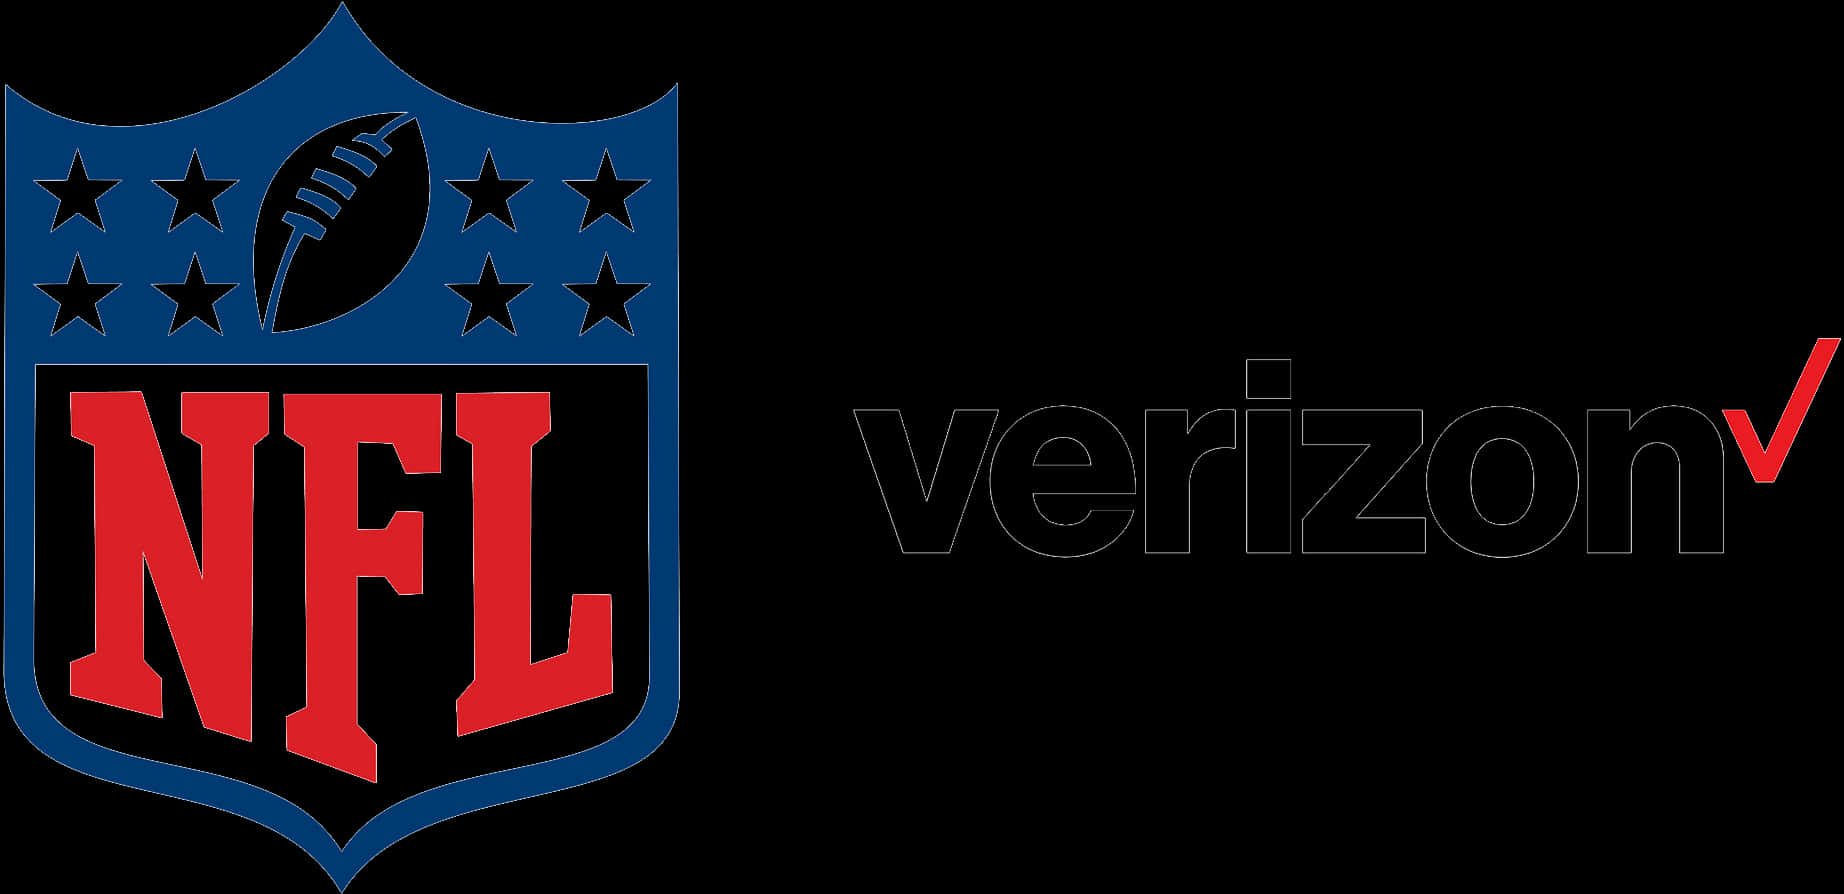 N F Land Verizon Partnership Logo PNG image